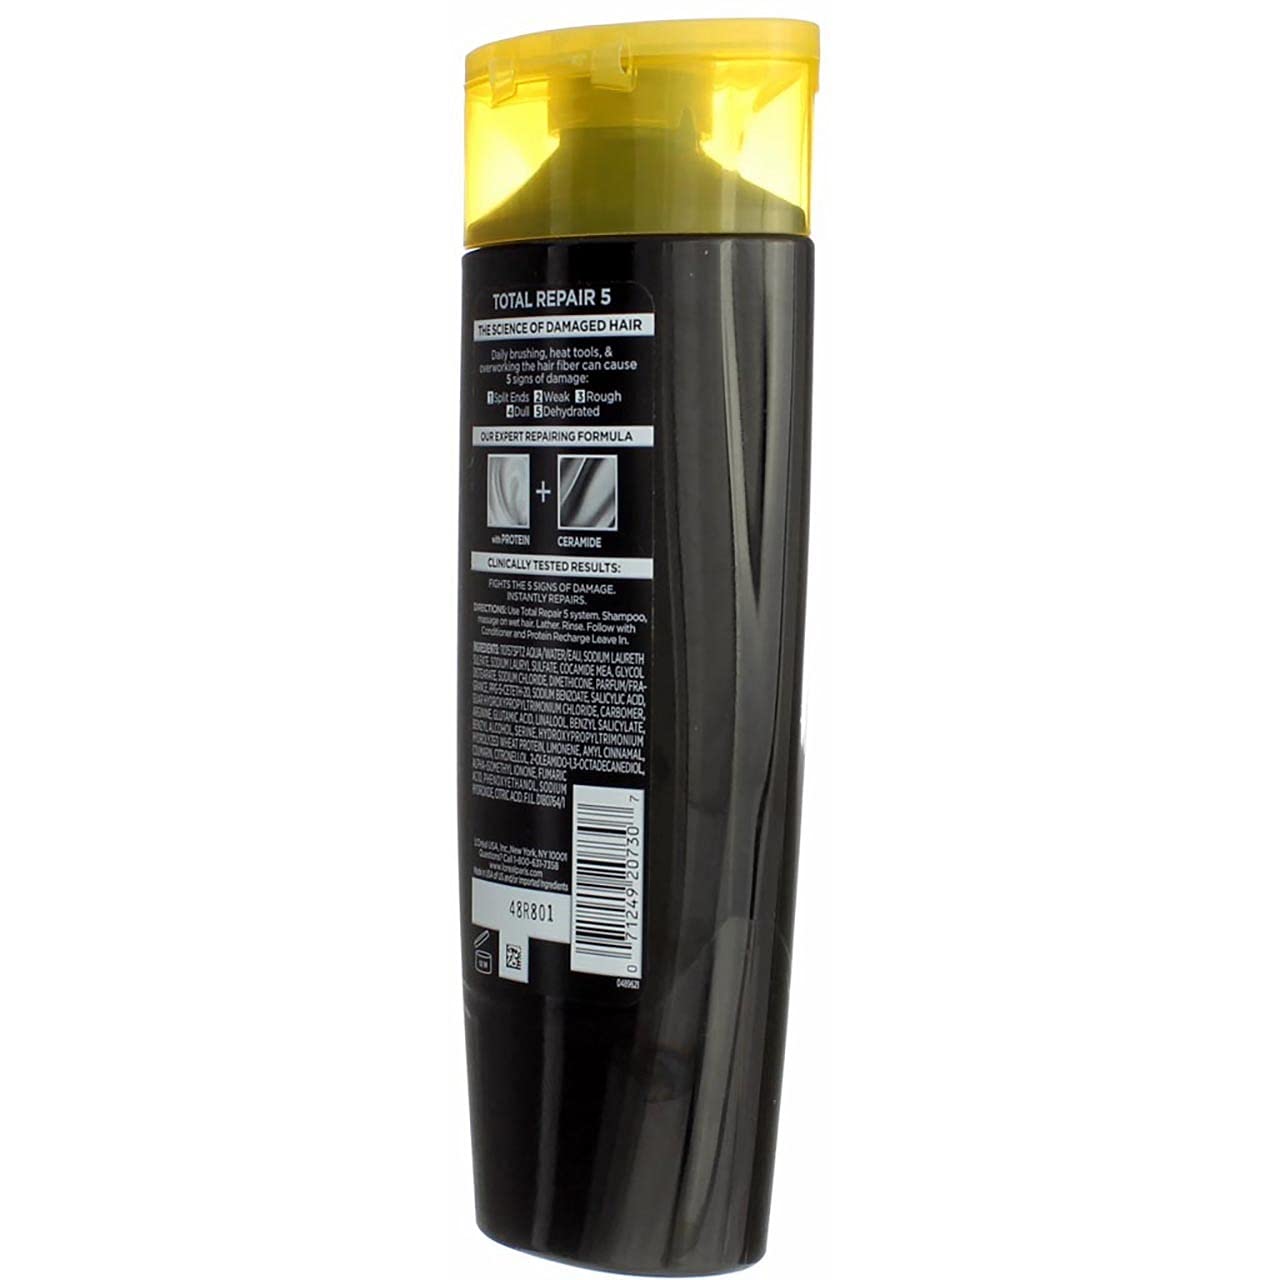 Loreal Shampoo Elvive Total Repair 5 Repairing 12.6 Ounce (375ml) (2 Pack)